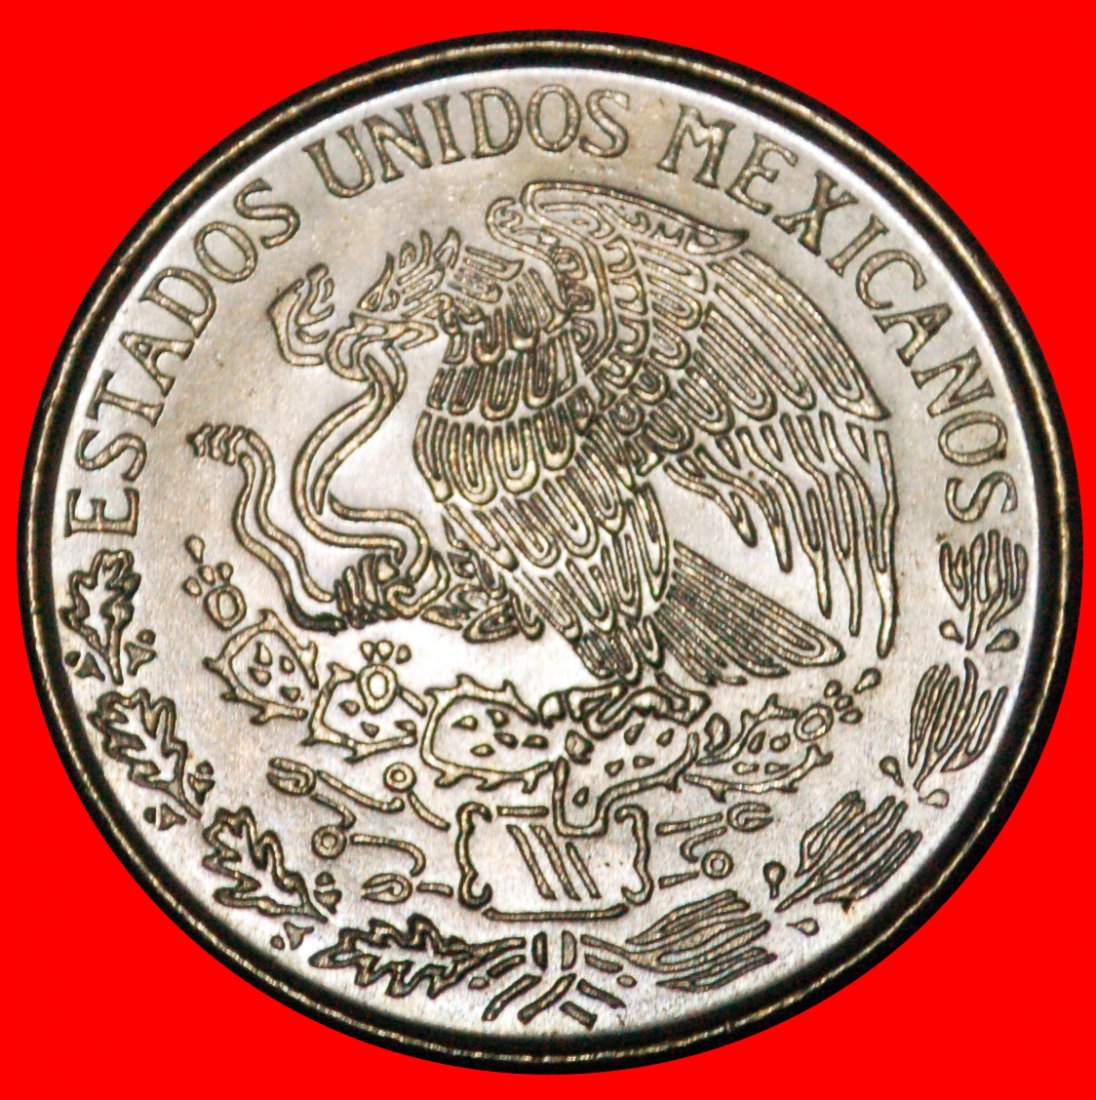  • KEIN BREITES DATUM: MEXICO ★ 1 PESO 1970 uSTG STEMPELGLANZ! OHNE VORBEHALT!   